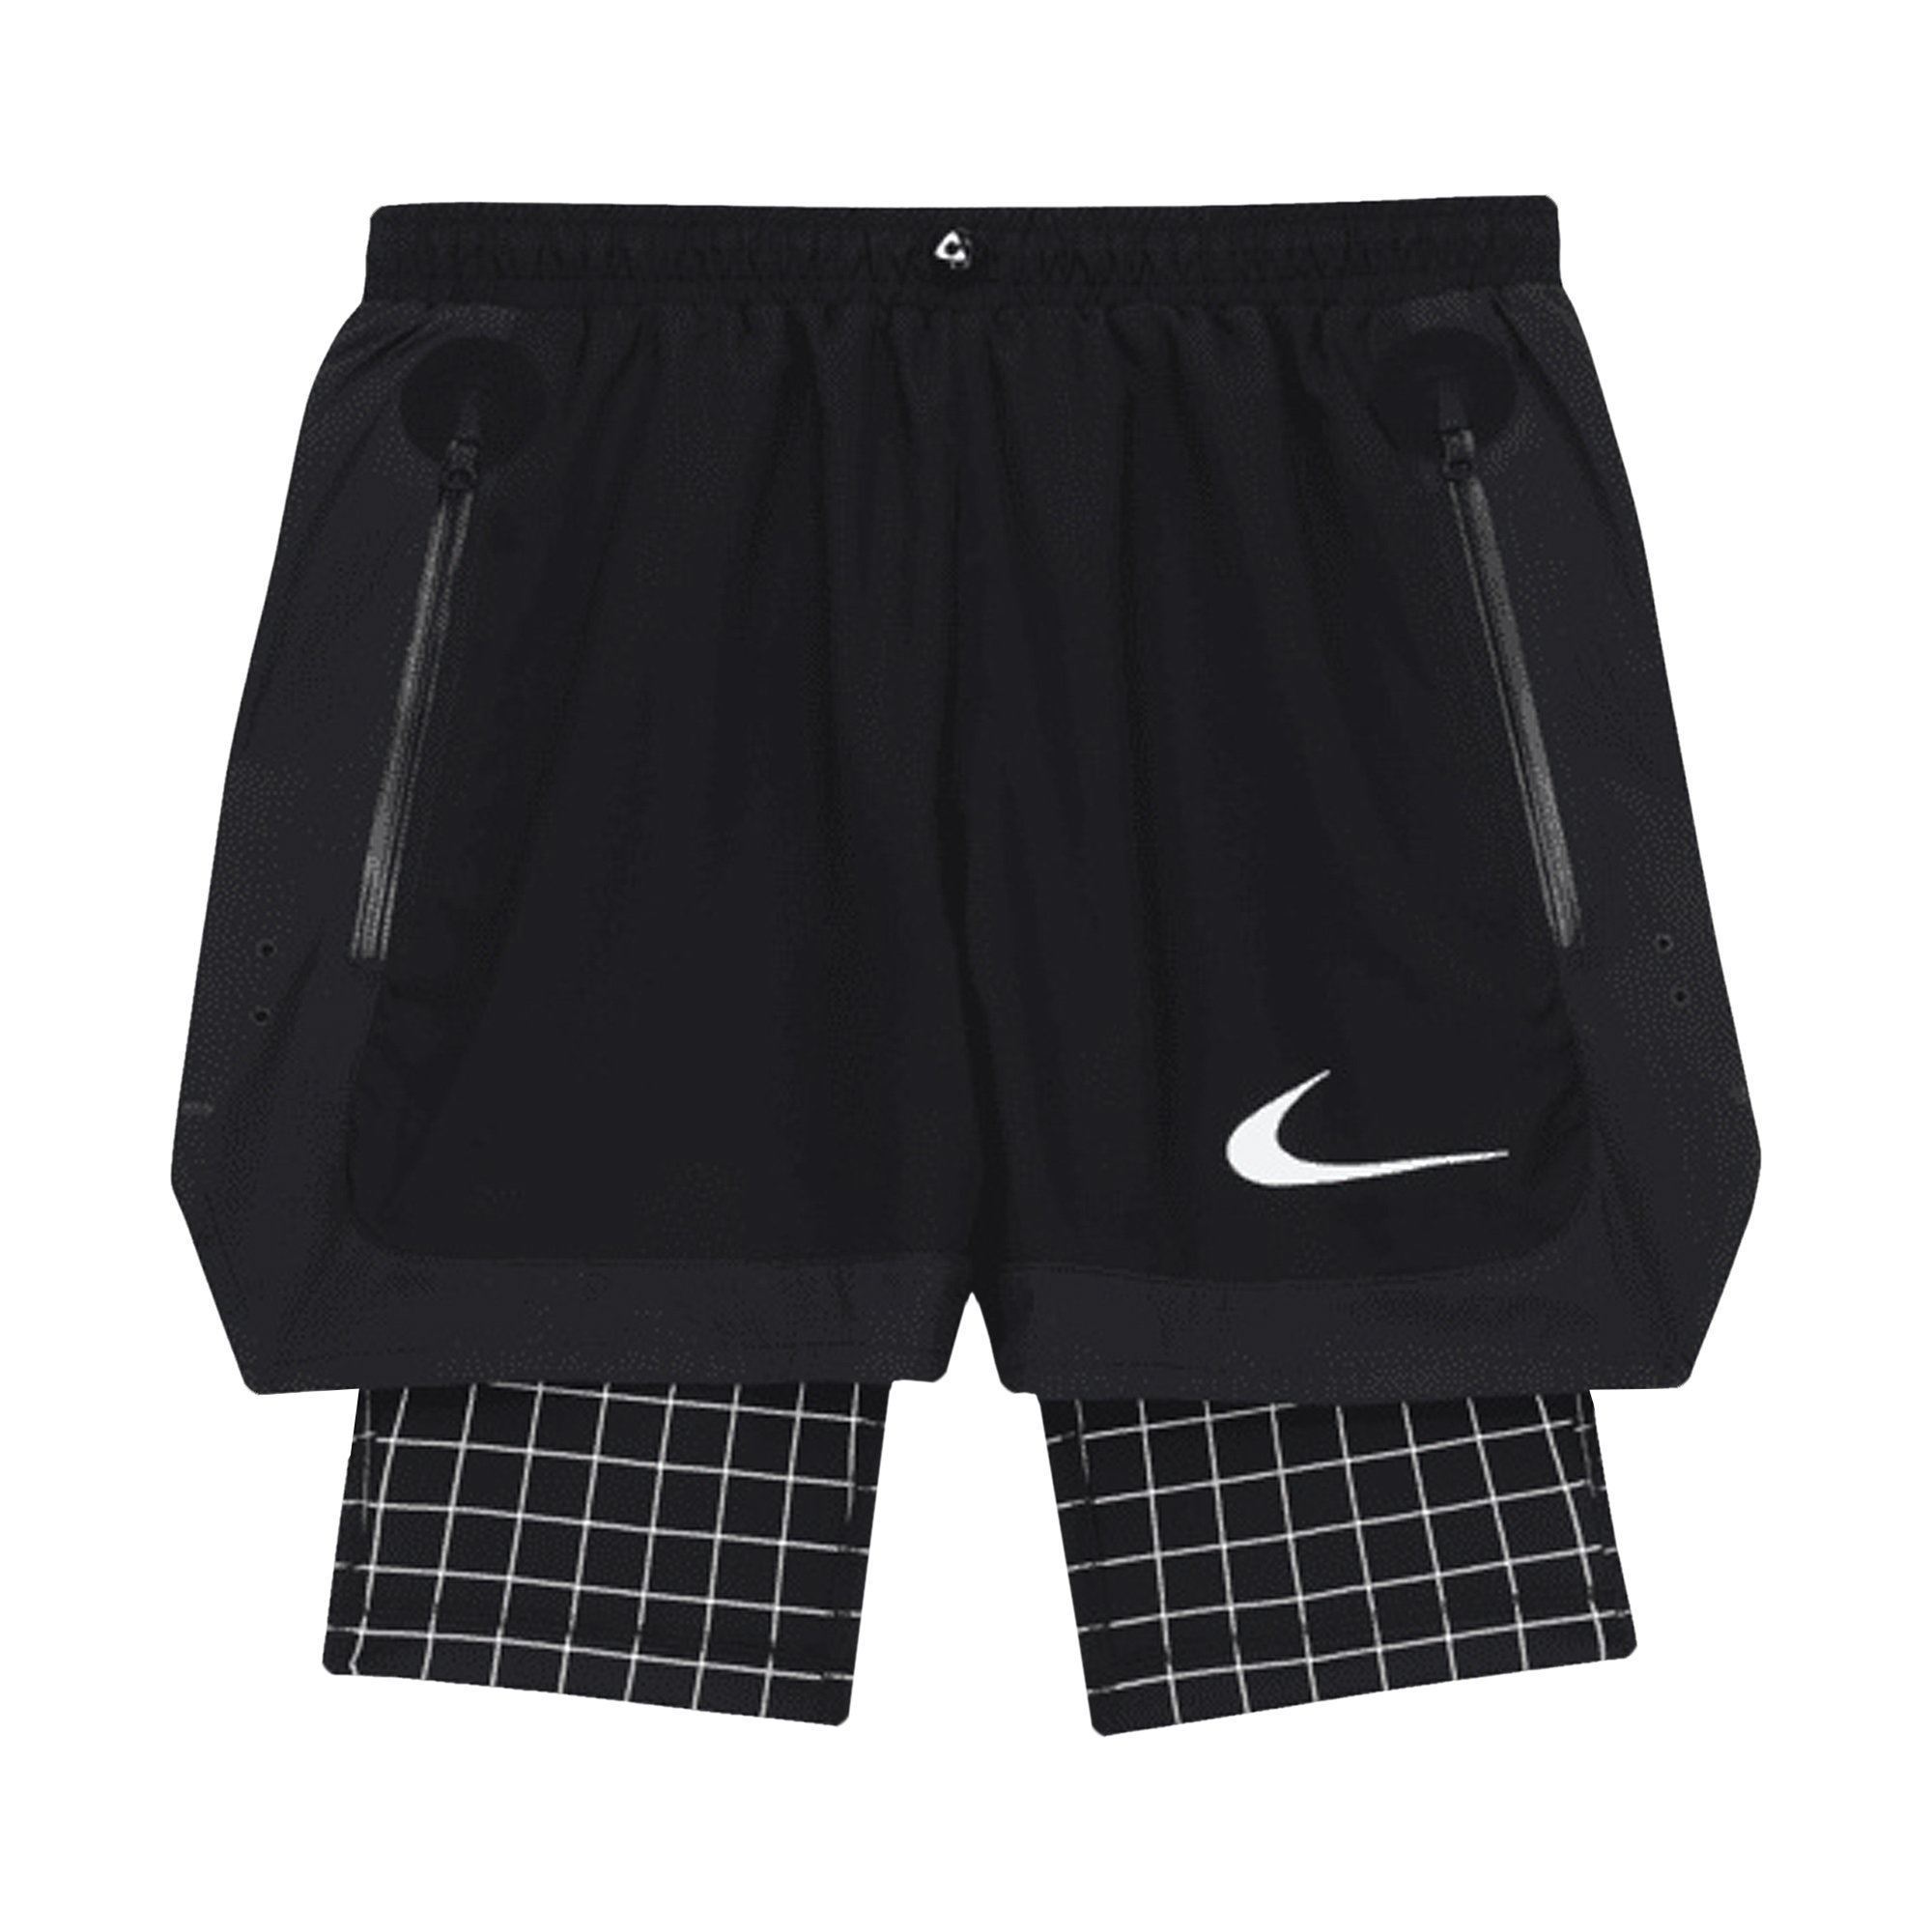 Шорты Nike x Off-White, черные